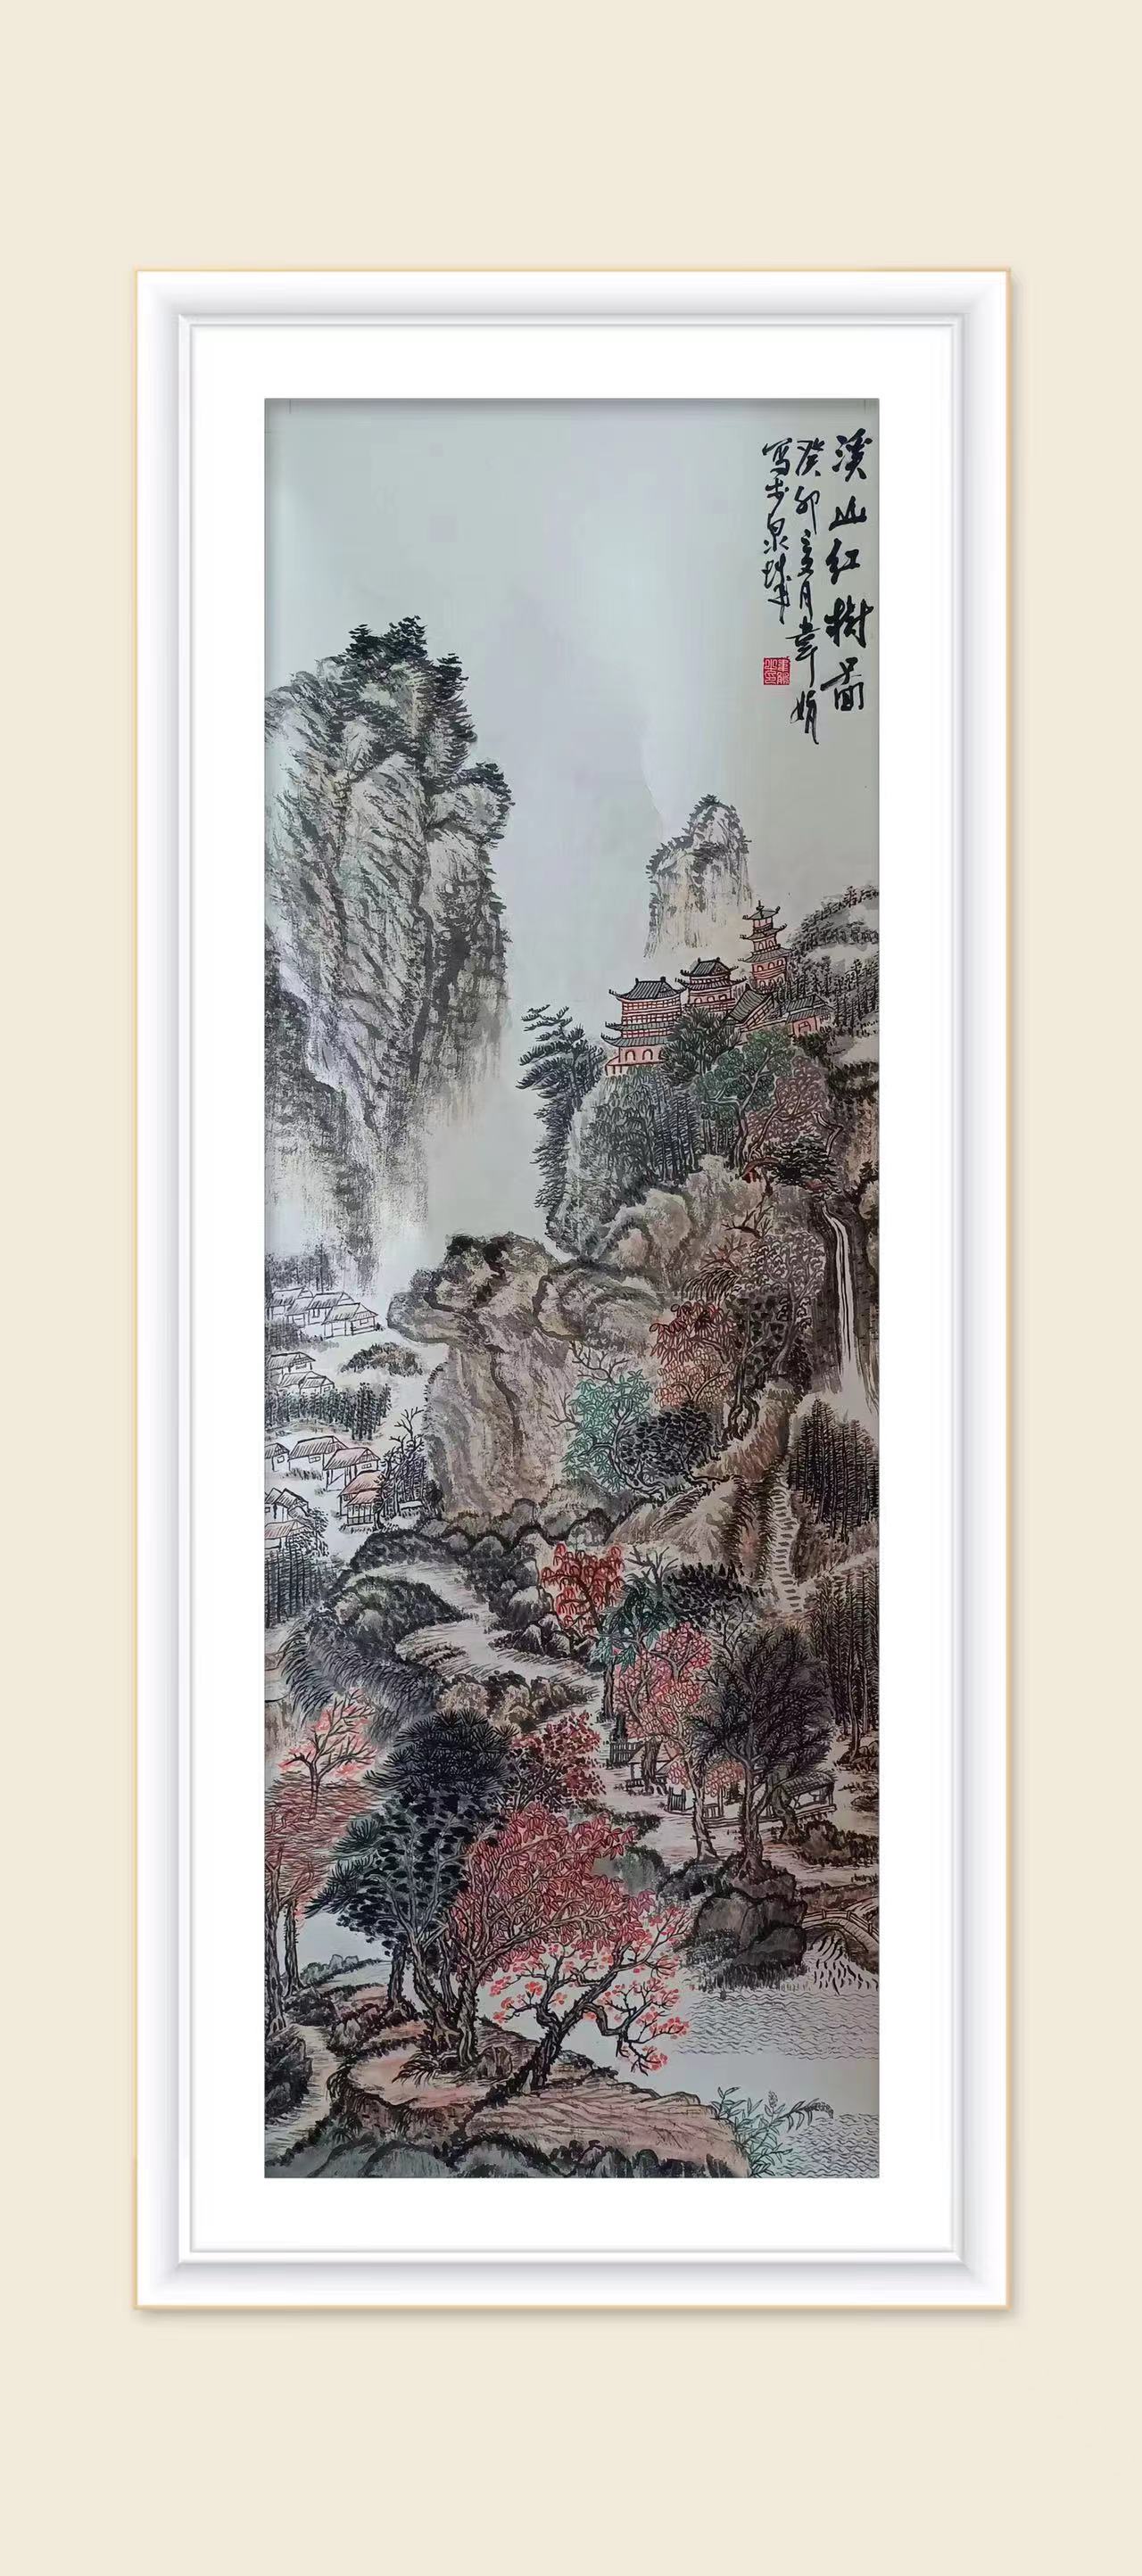 中国大众文化学会名人书画艺术发展委员会——韦娟